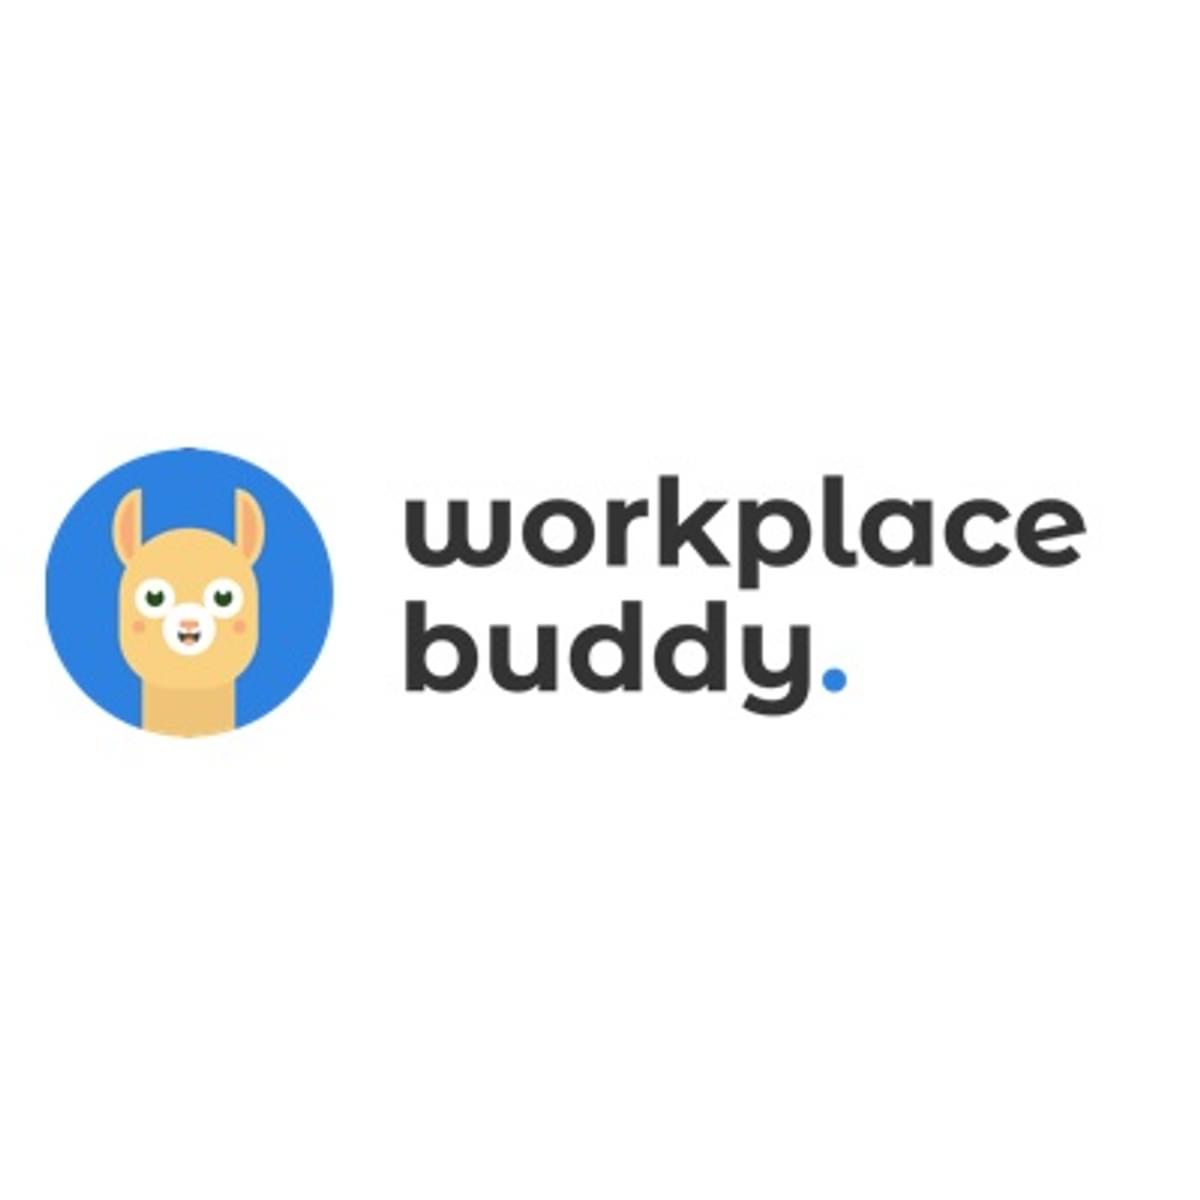 WorkplaceBuddy is beschikbaar vanuit Microsoft Teams image